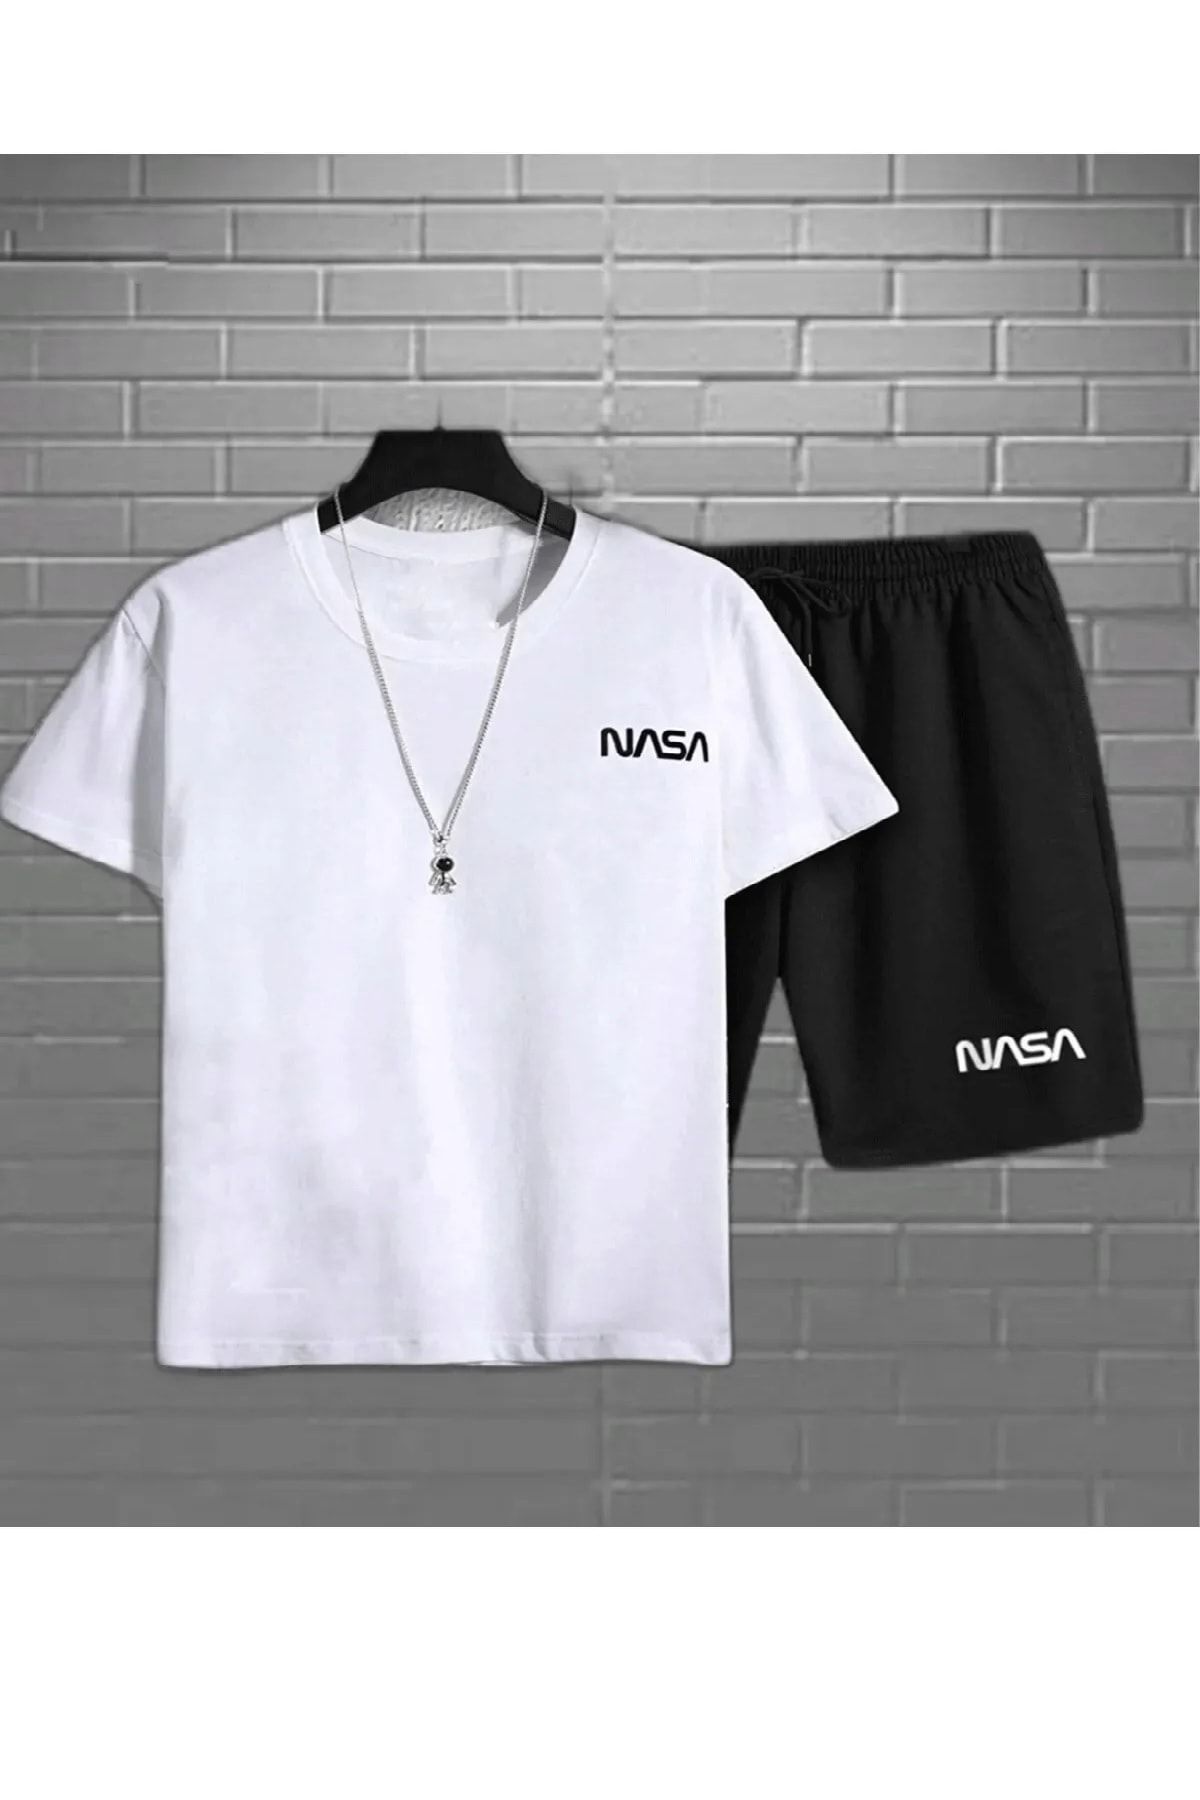 Hunors Sportswear & Company 2'li Nasa Şort T-shirt Takım Siyah Takım NASASORTTSHIRT